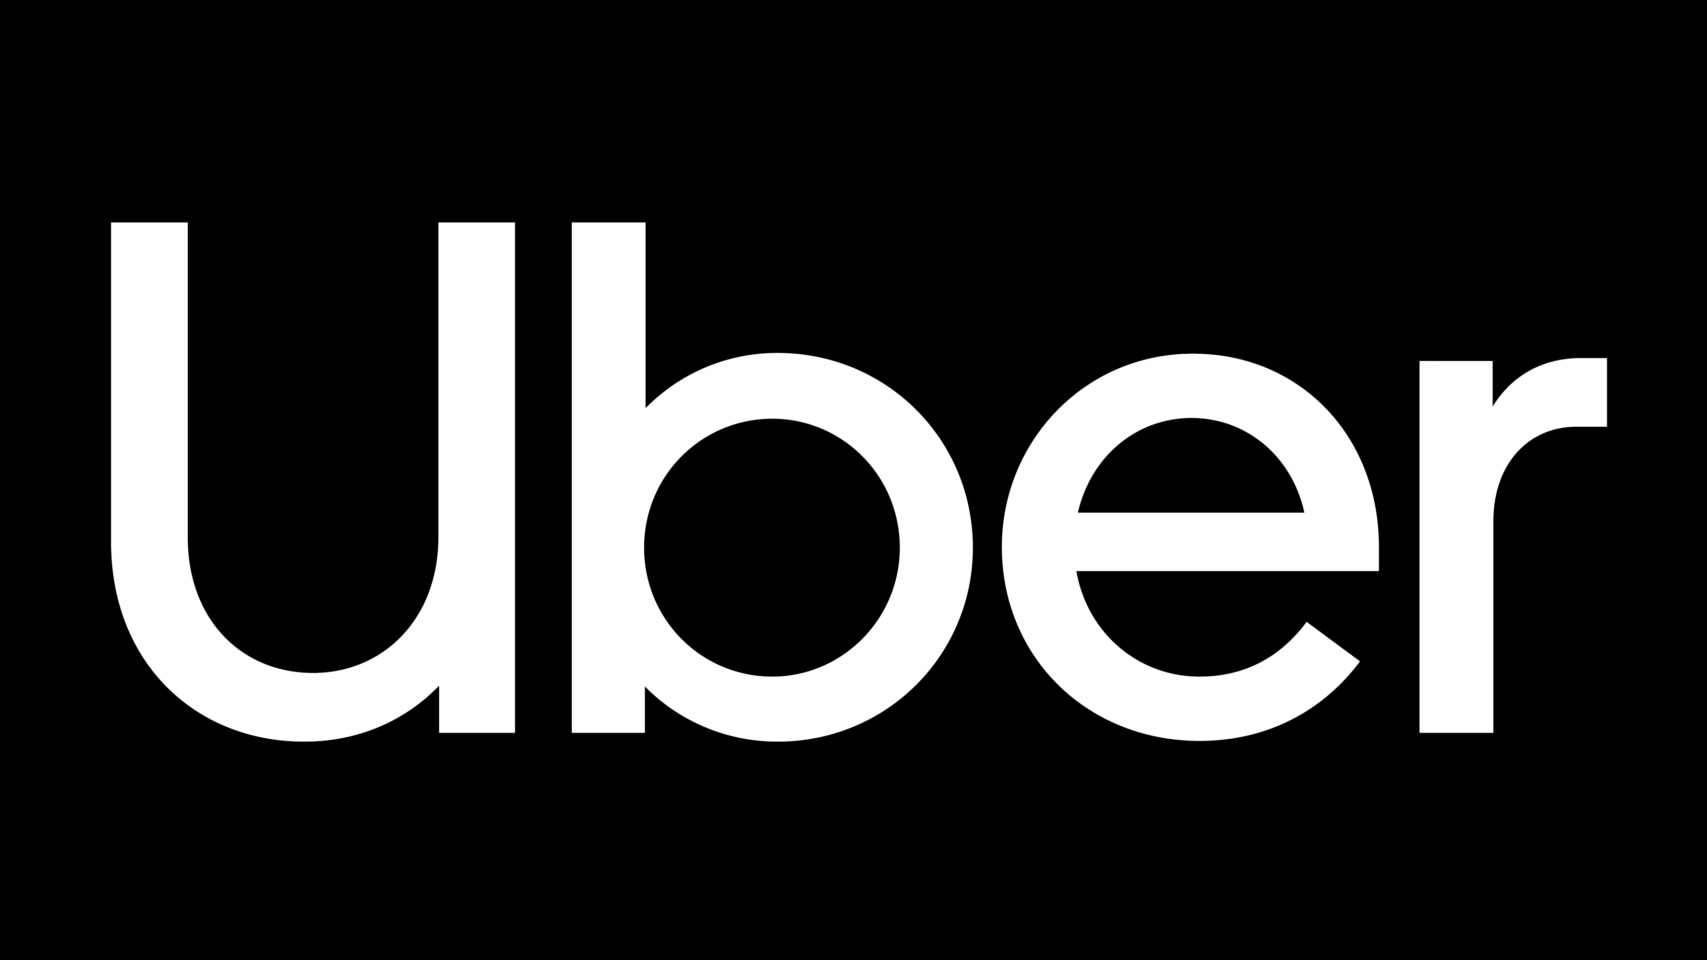 Uber Logos - KibrisPDR